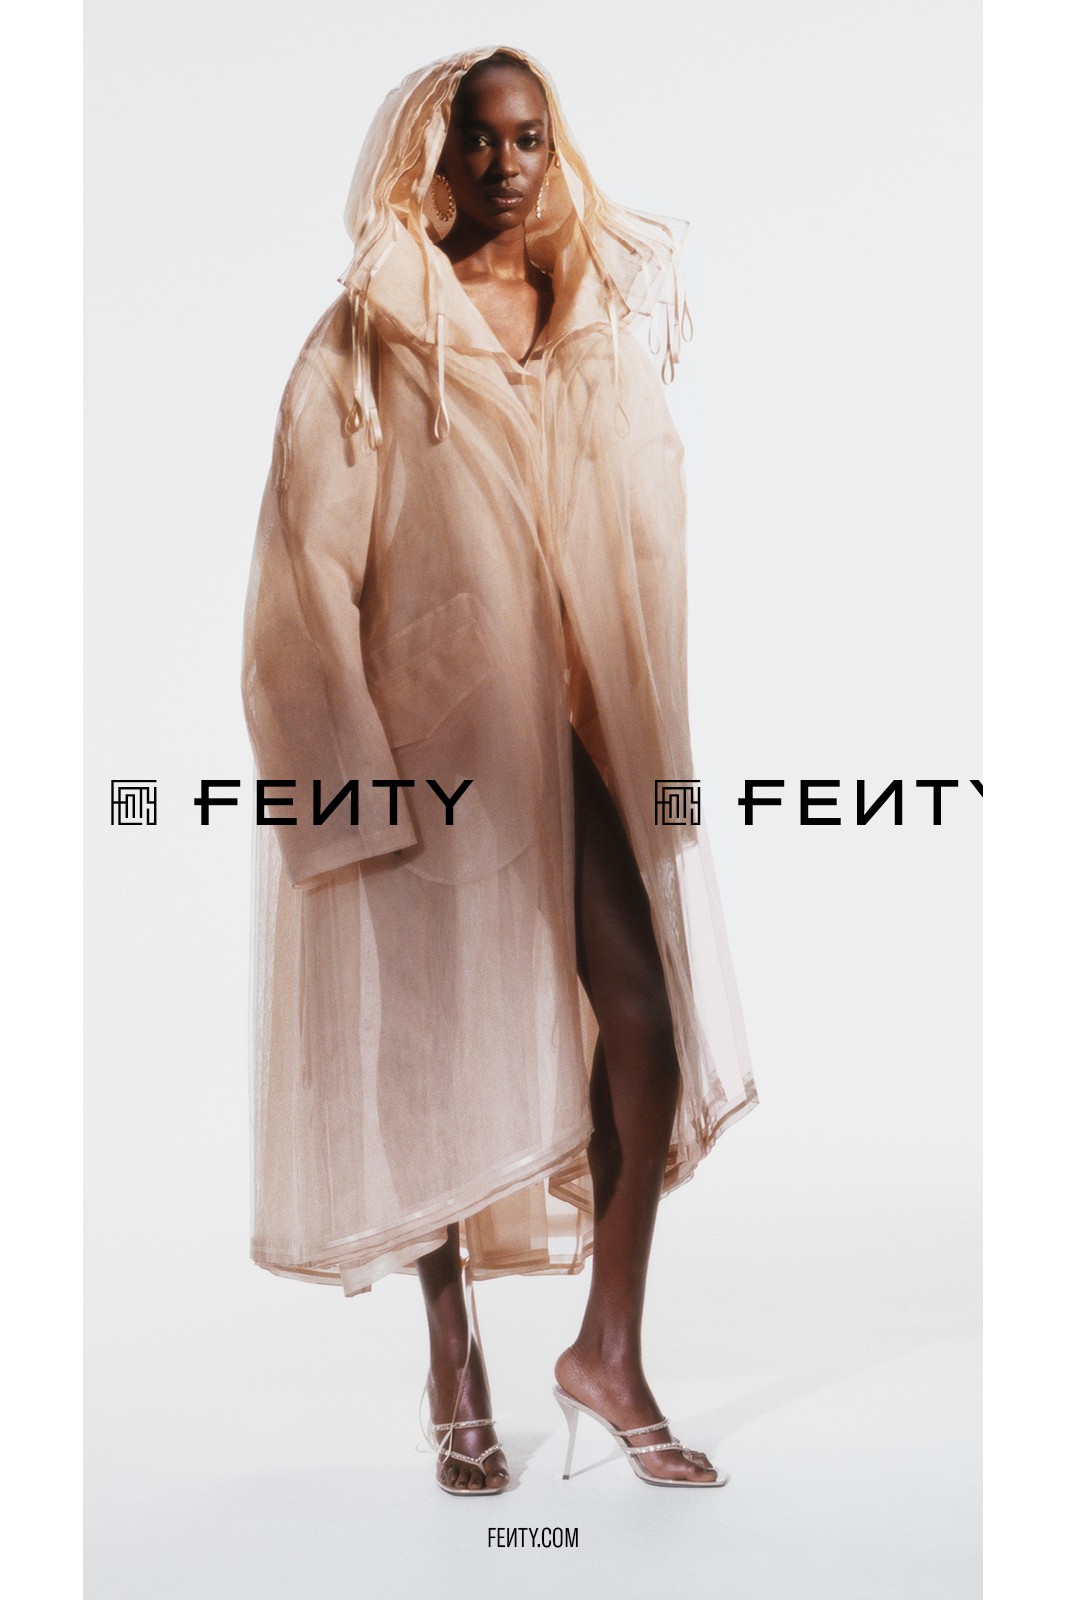 Рианна выпустила кампанию декабрьской коллекции Fenty (фото 9)